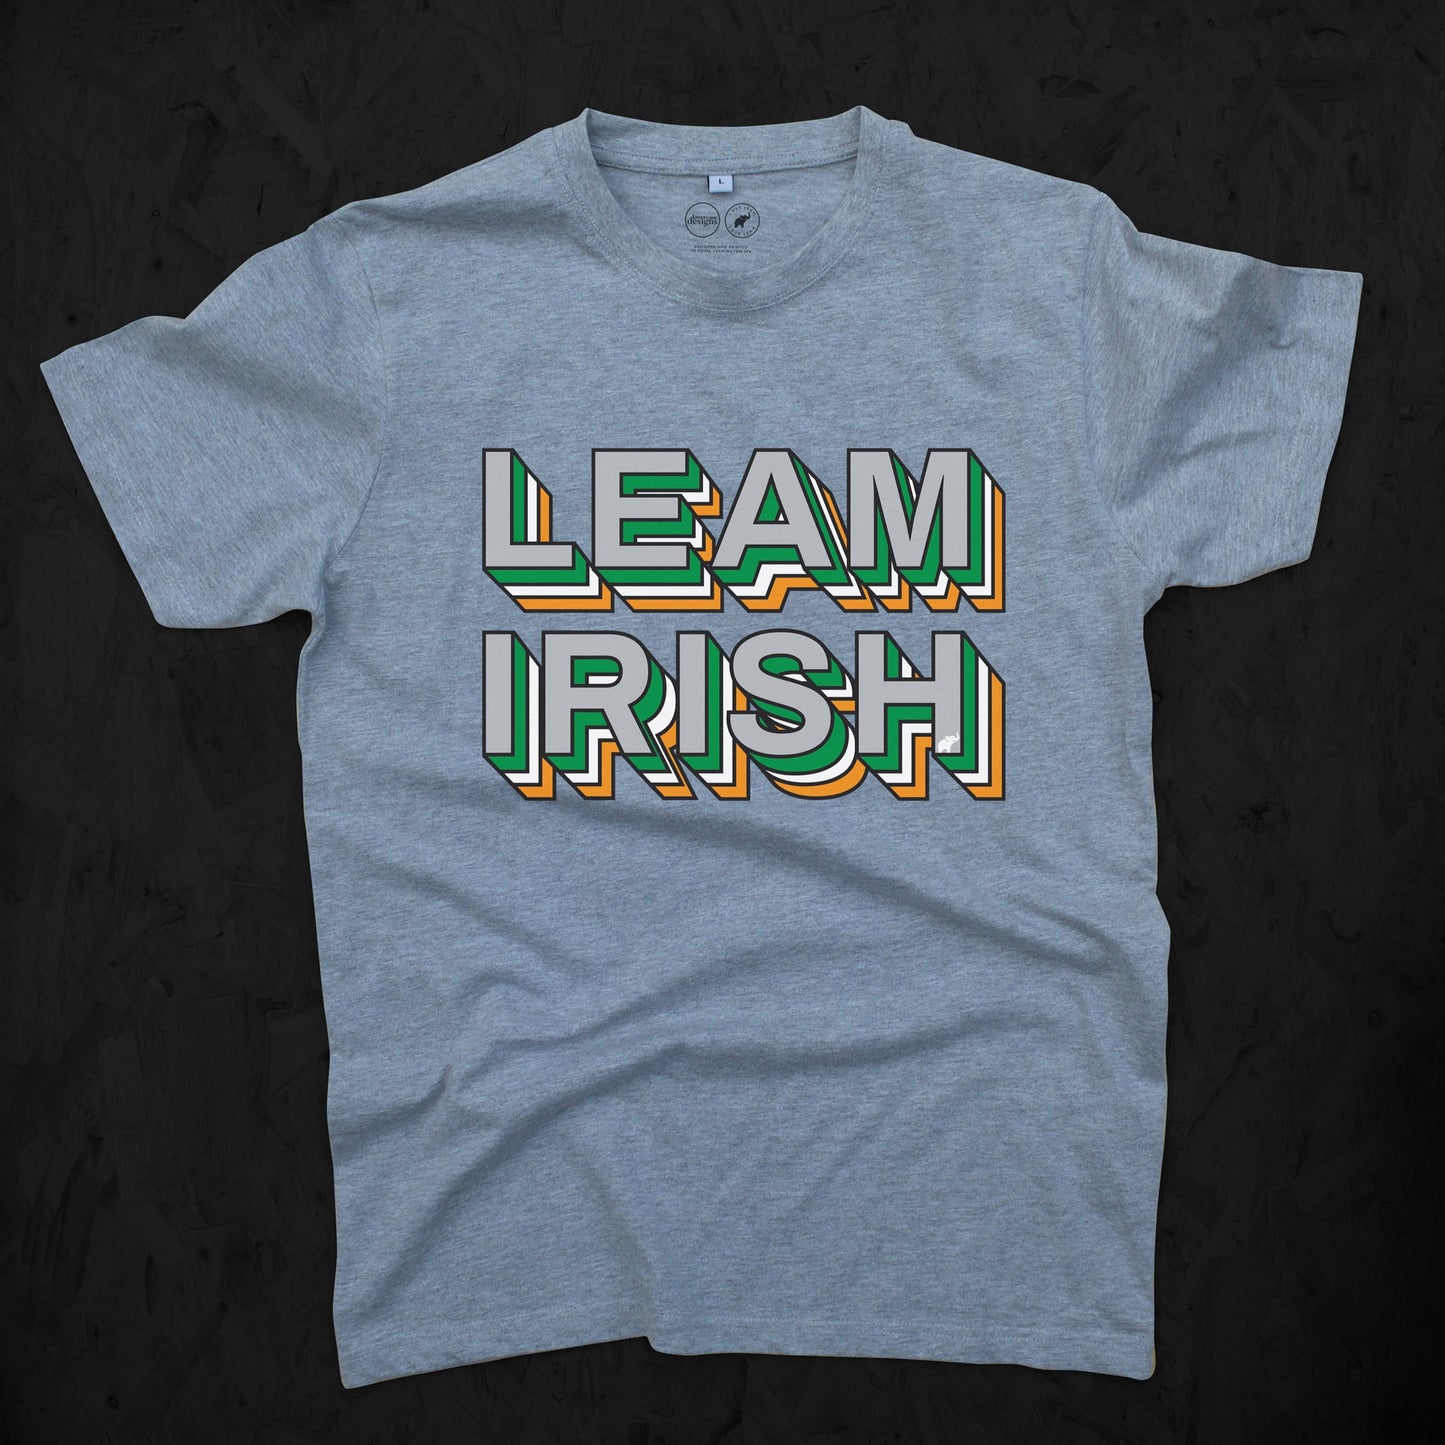 Leam Irish Tee